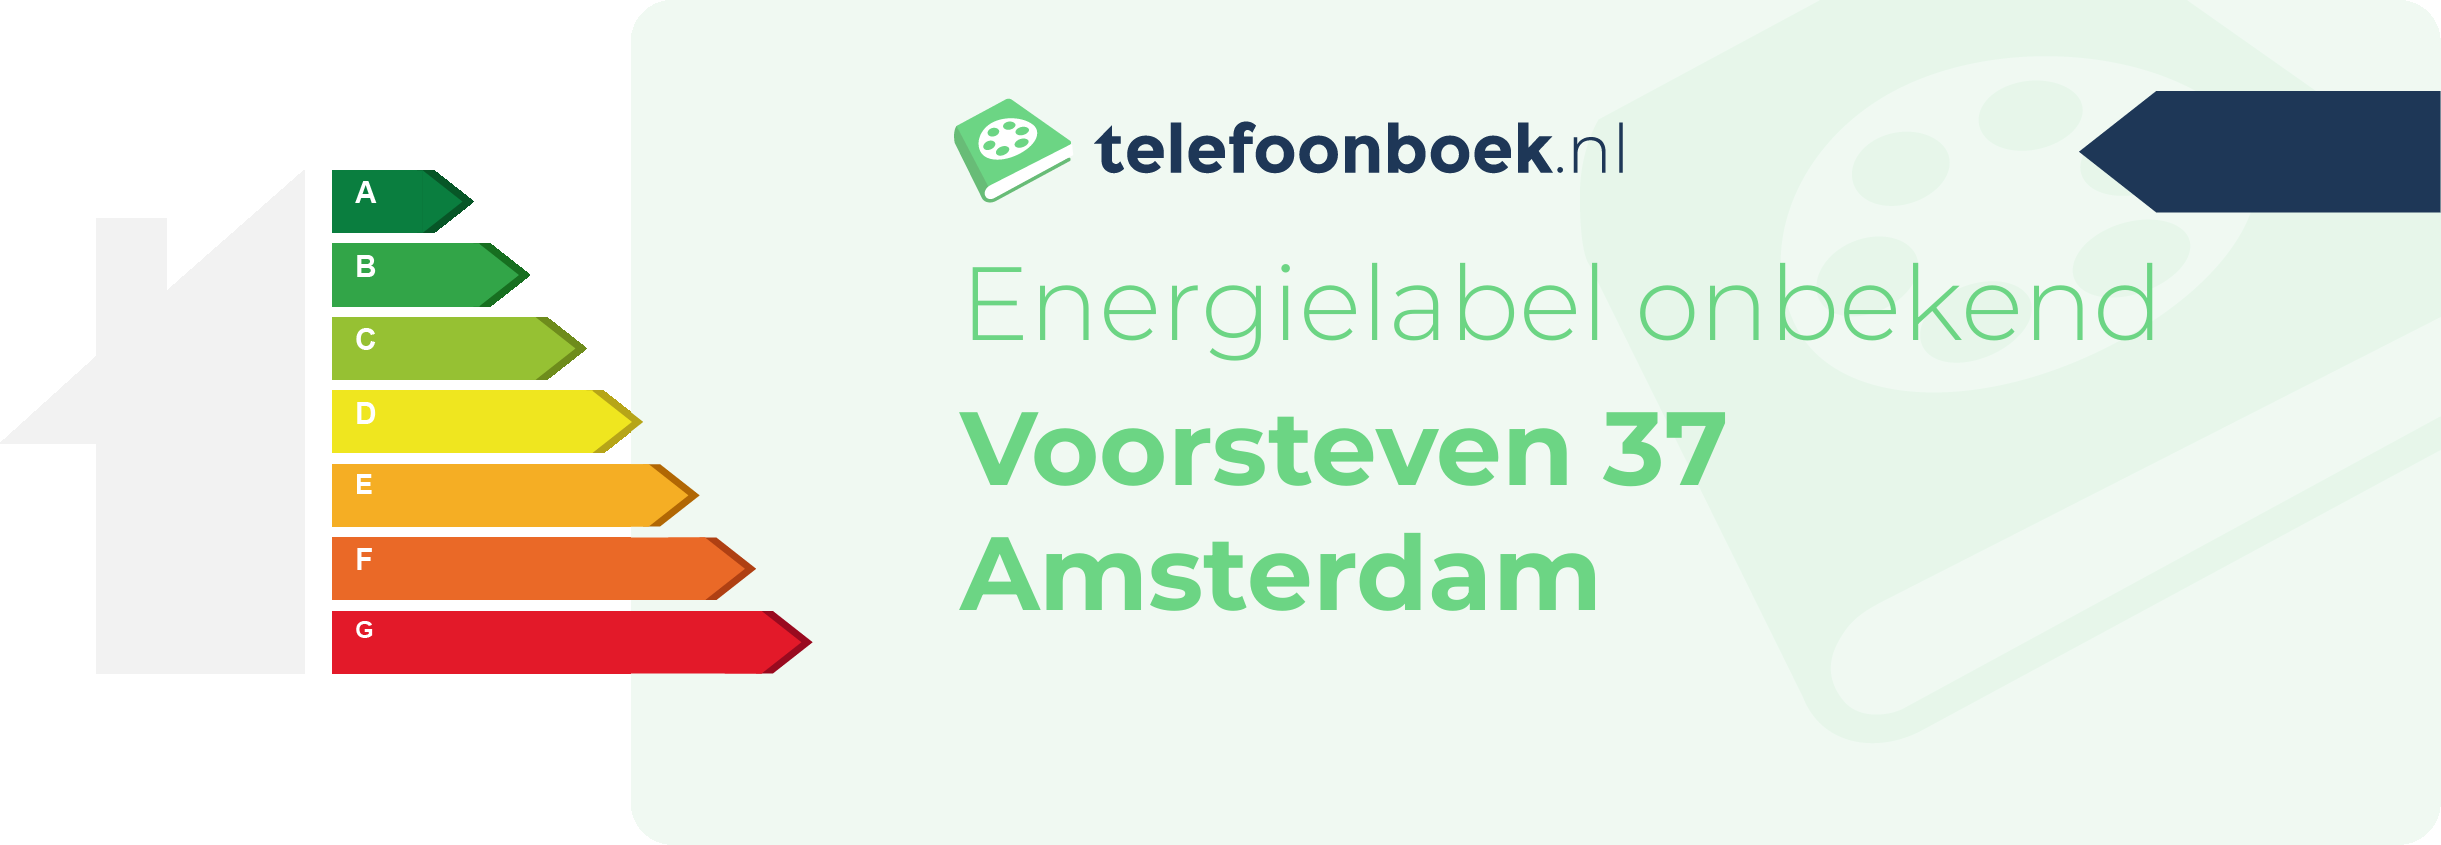 Energielabel Voorsteven 37 Amsterdam